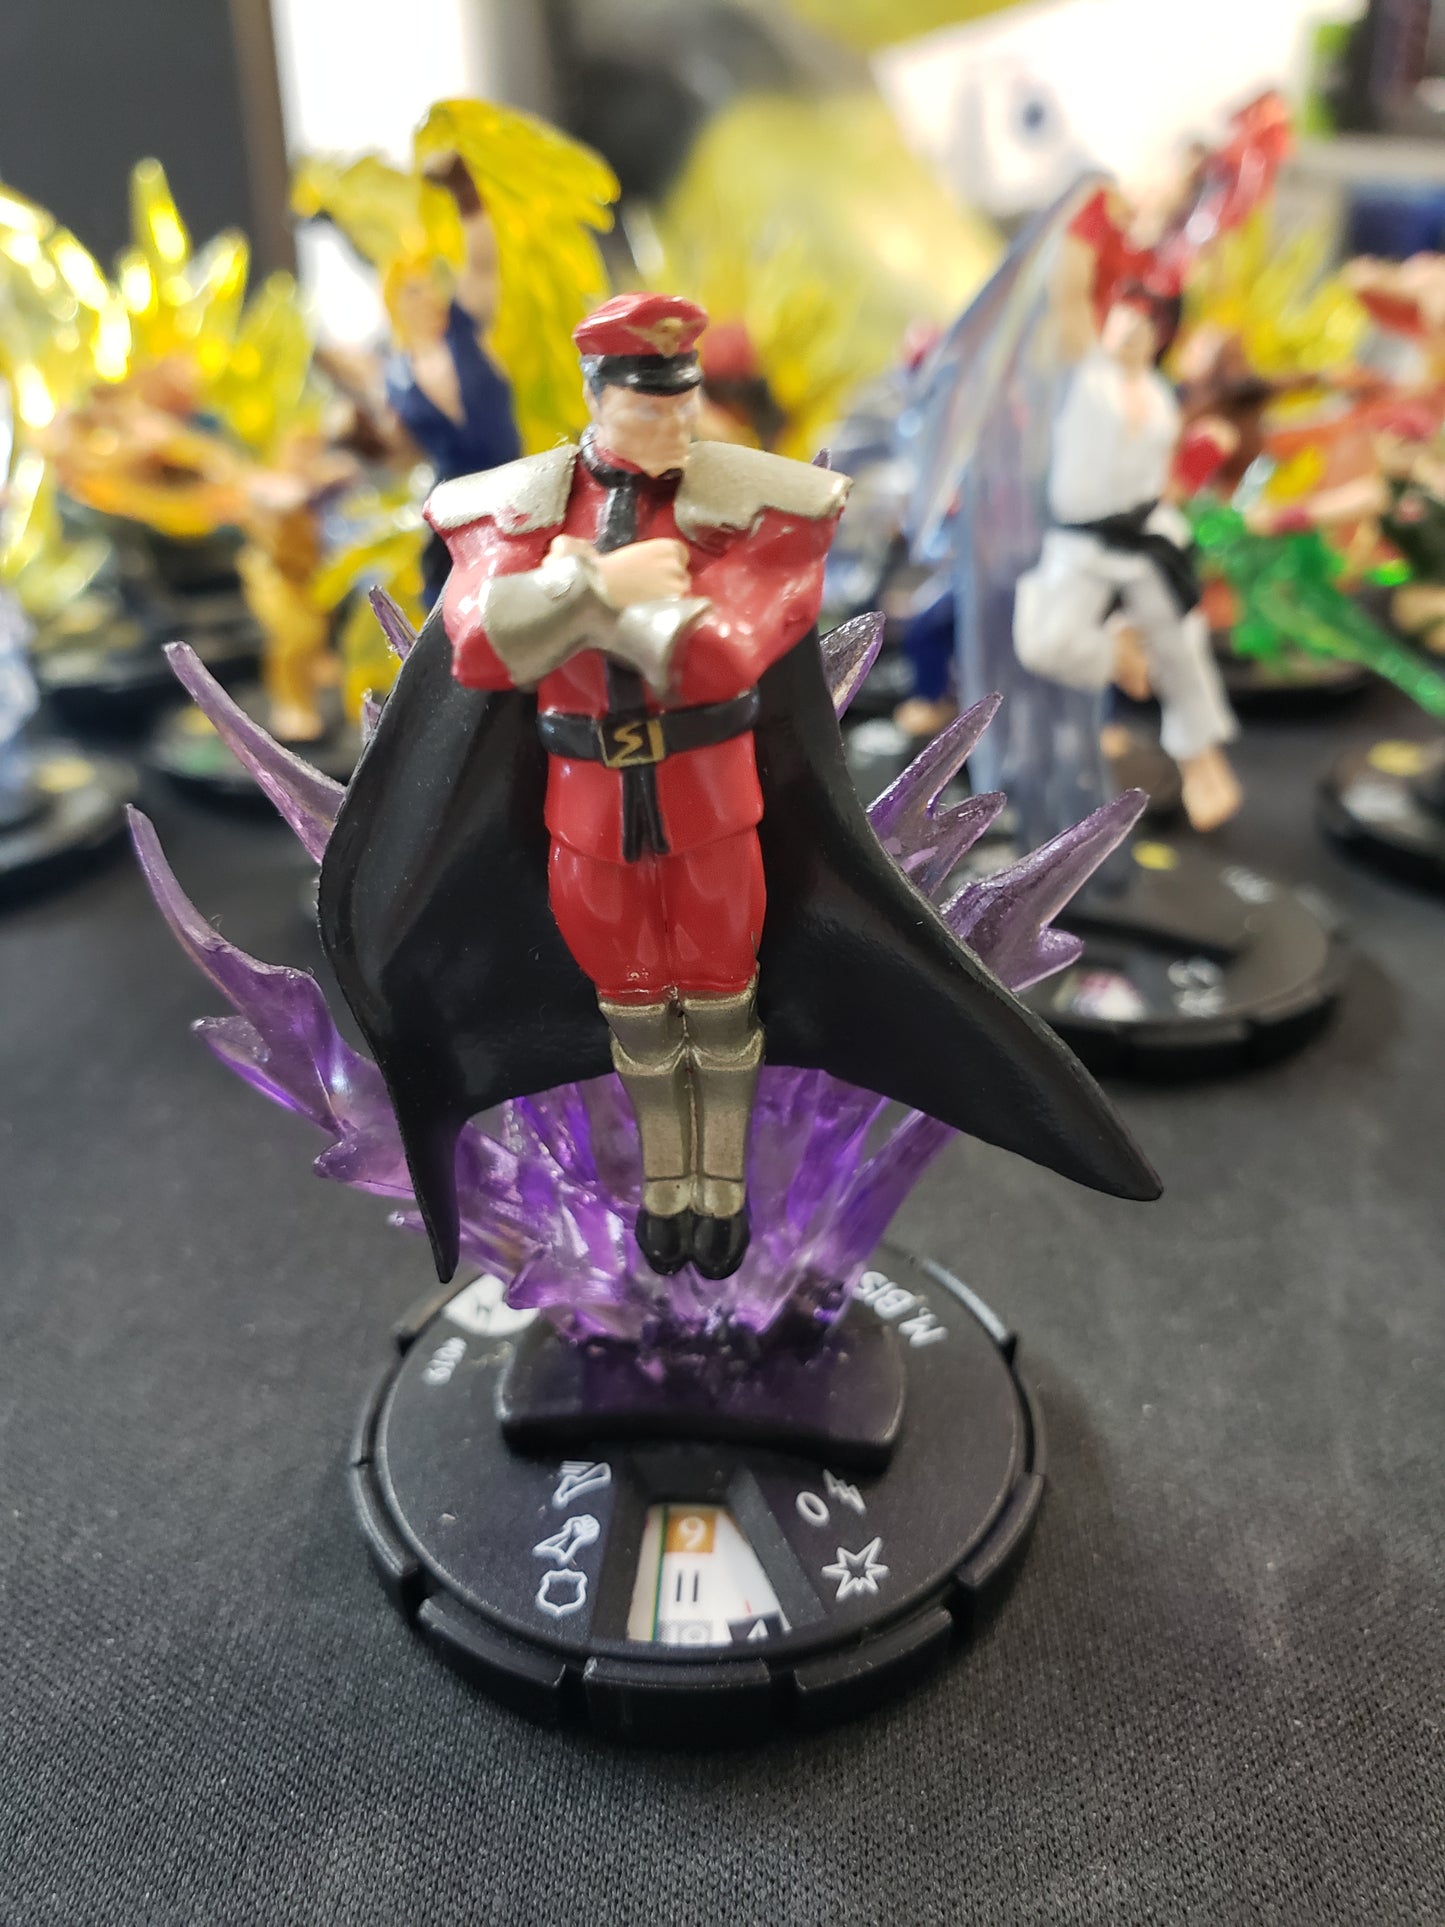 Street Fighter Heroclix Figures